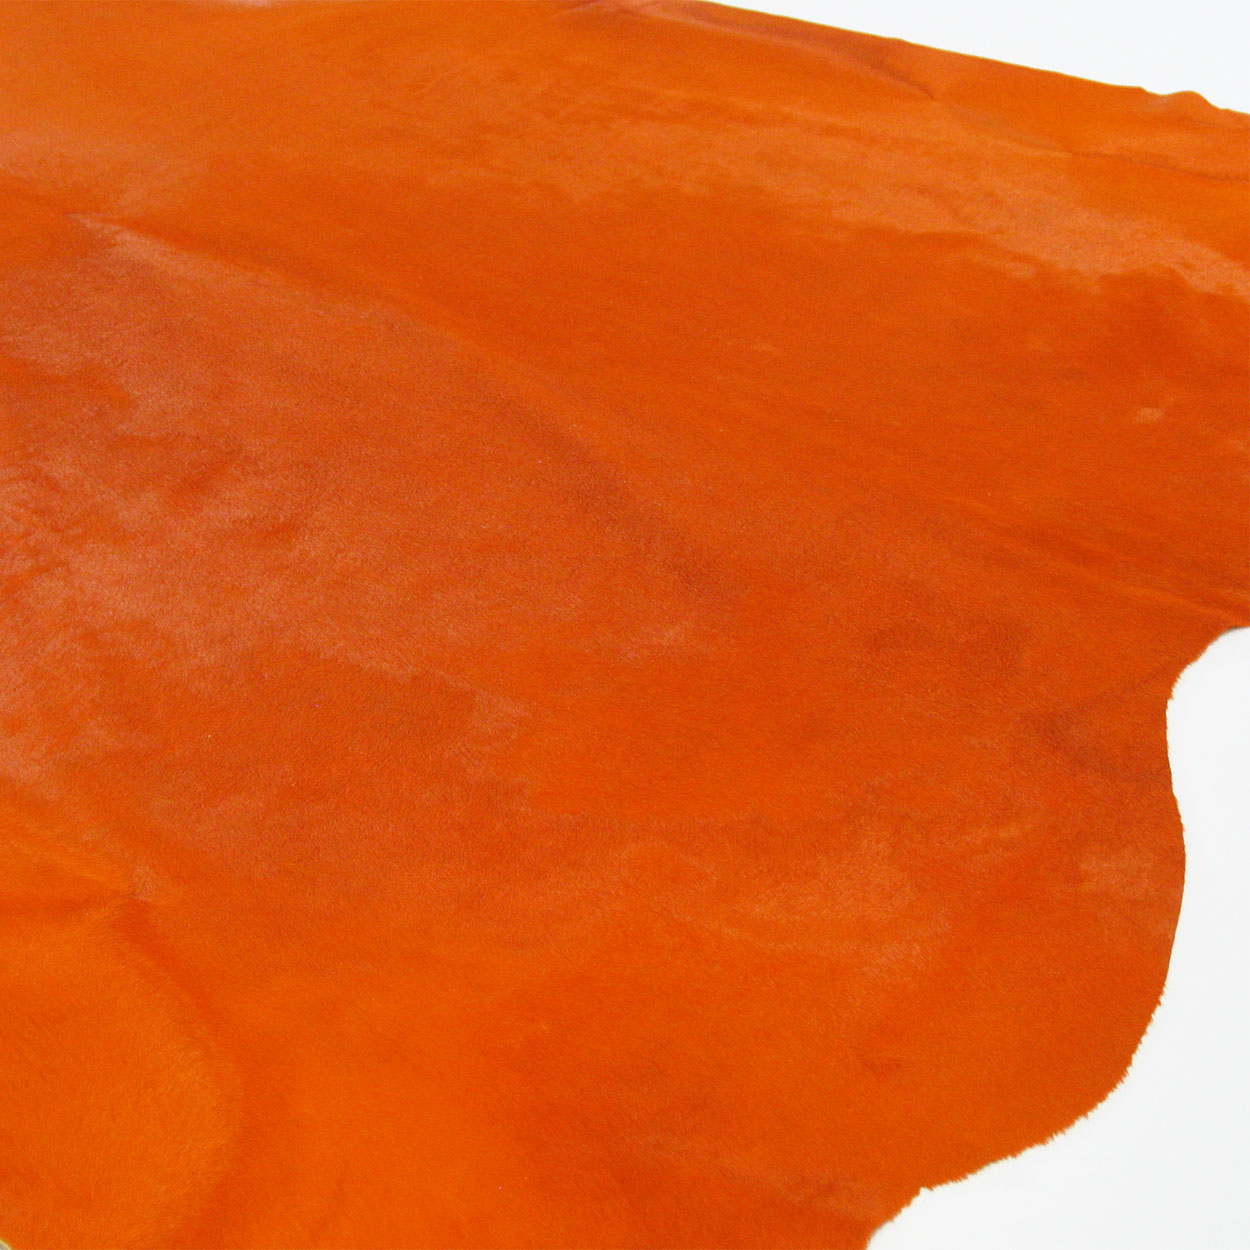 322523 - Colorfast Dyed Solid Orange Premium Cowhide Rug